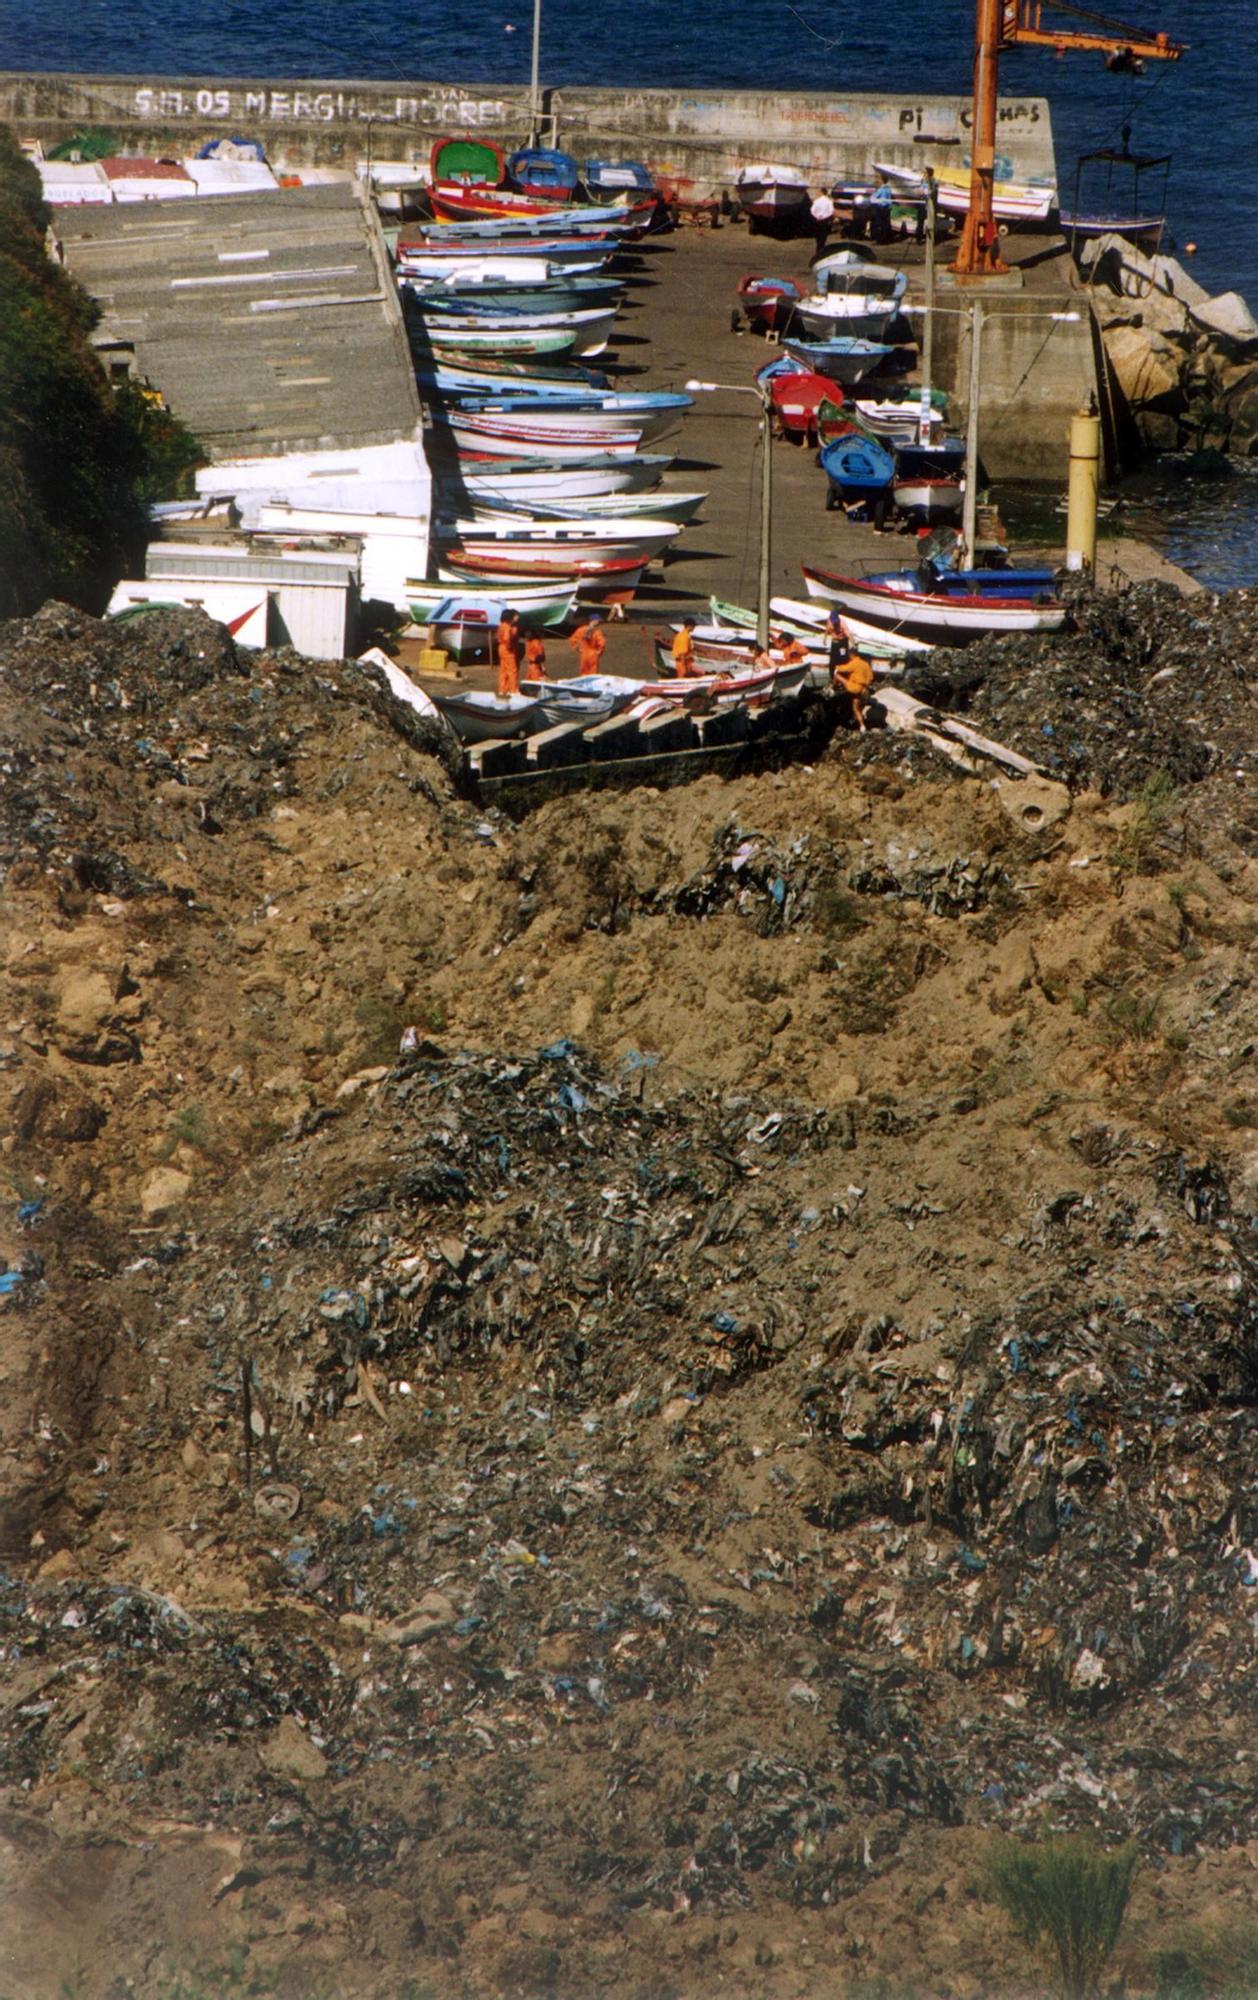 Derrumbe del vertedero de Bens en A Coruña en 1996 Víctor Echave 200.000 toneladas de basura (5).jpg